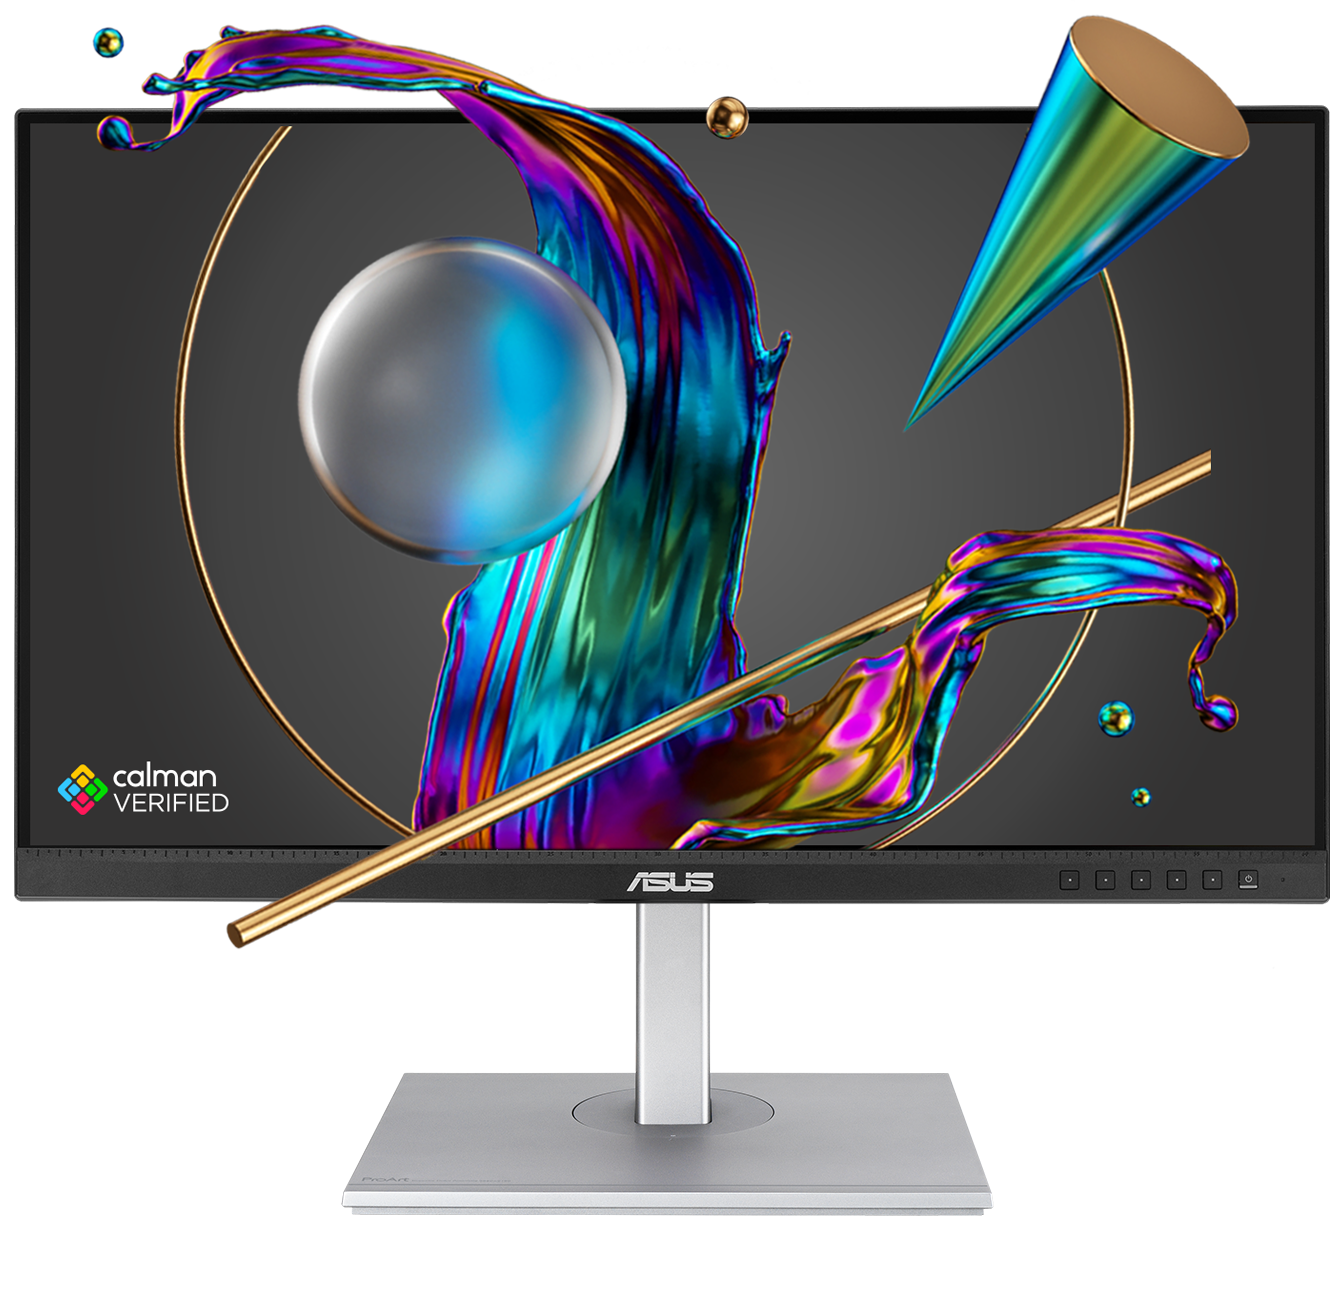 El monitor ProArt está verificado por Calman y muestra la obra de arte creativa con colores precisos.